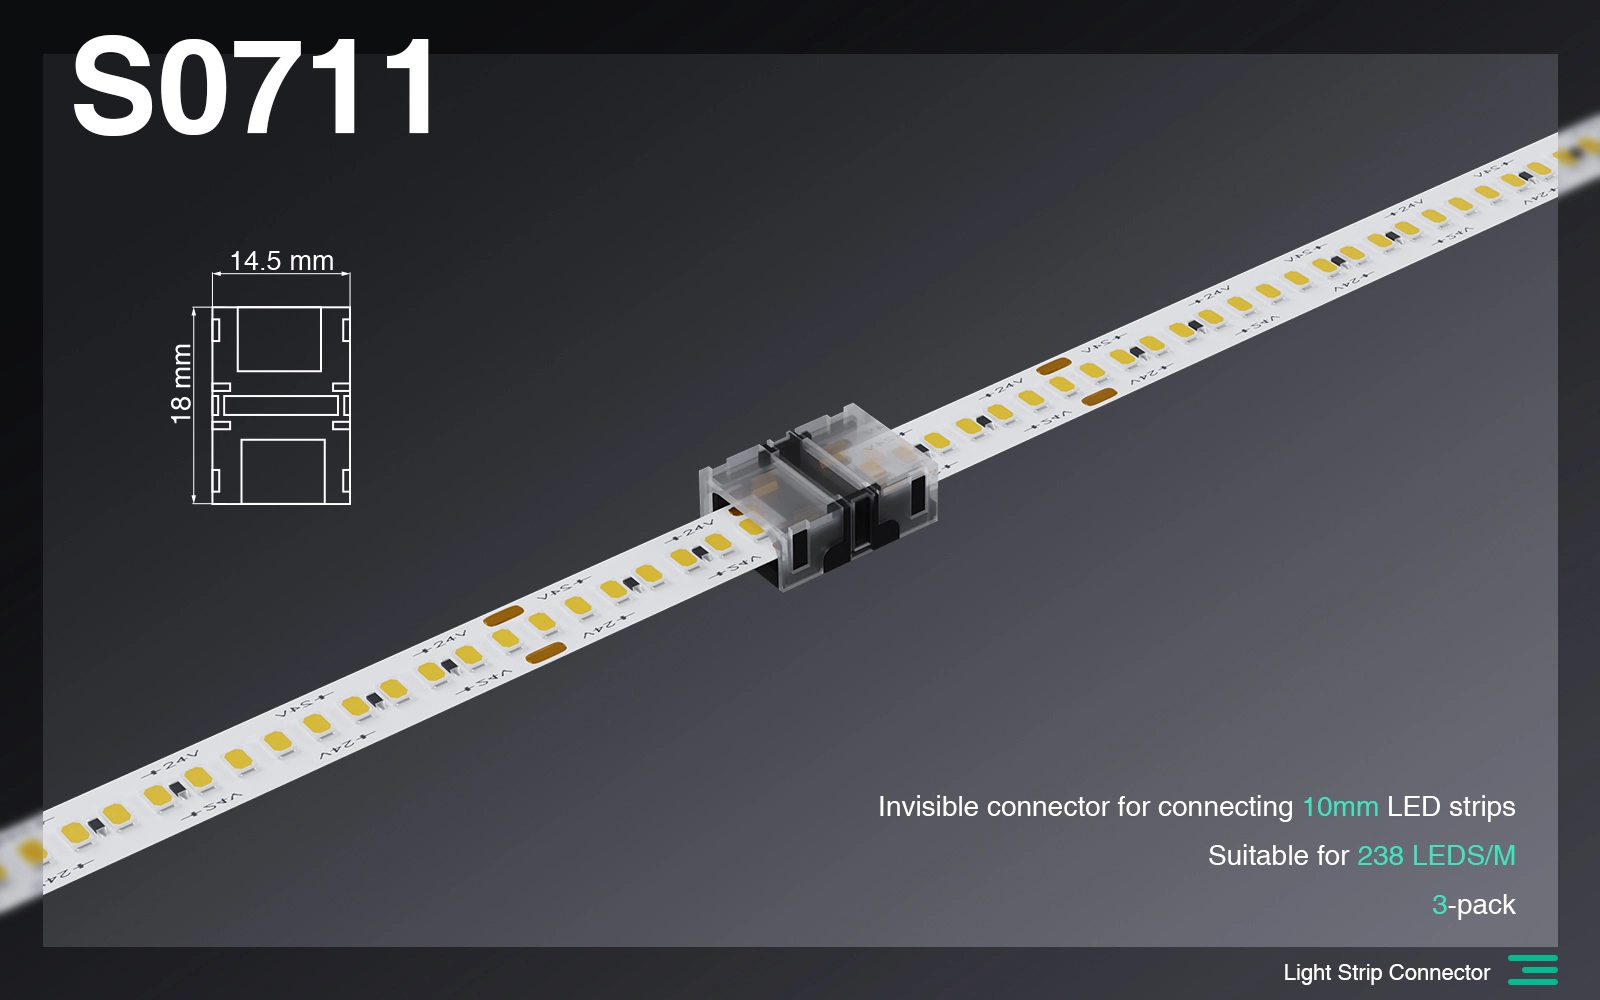 ဆက်စပ်ပစ္စည်းများ/မမြင်နိုင်သောချိတ်ဆက်မှုချိတ်ဆက်မှု 10mm/2Pin LED မီးကြိုးအကွက်/ 240 LEDS-ဆက်စပ်ပစ္စည်းများ--S0711 01 အတွက် သင့်လျော်သည်